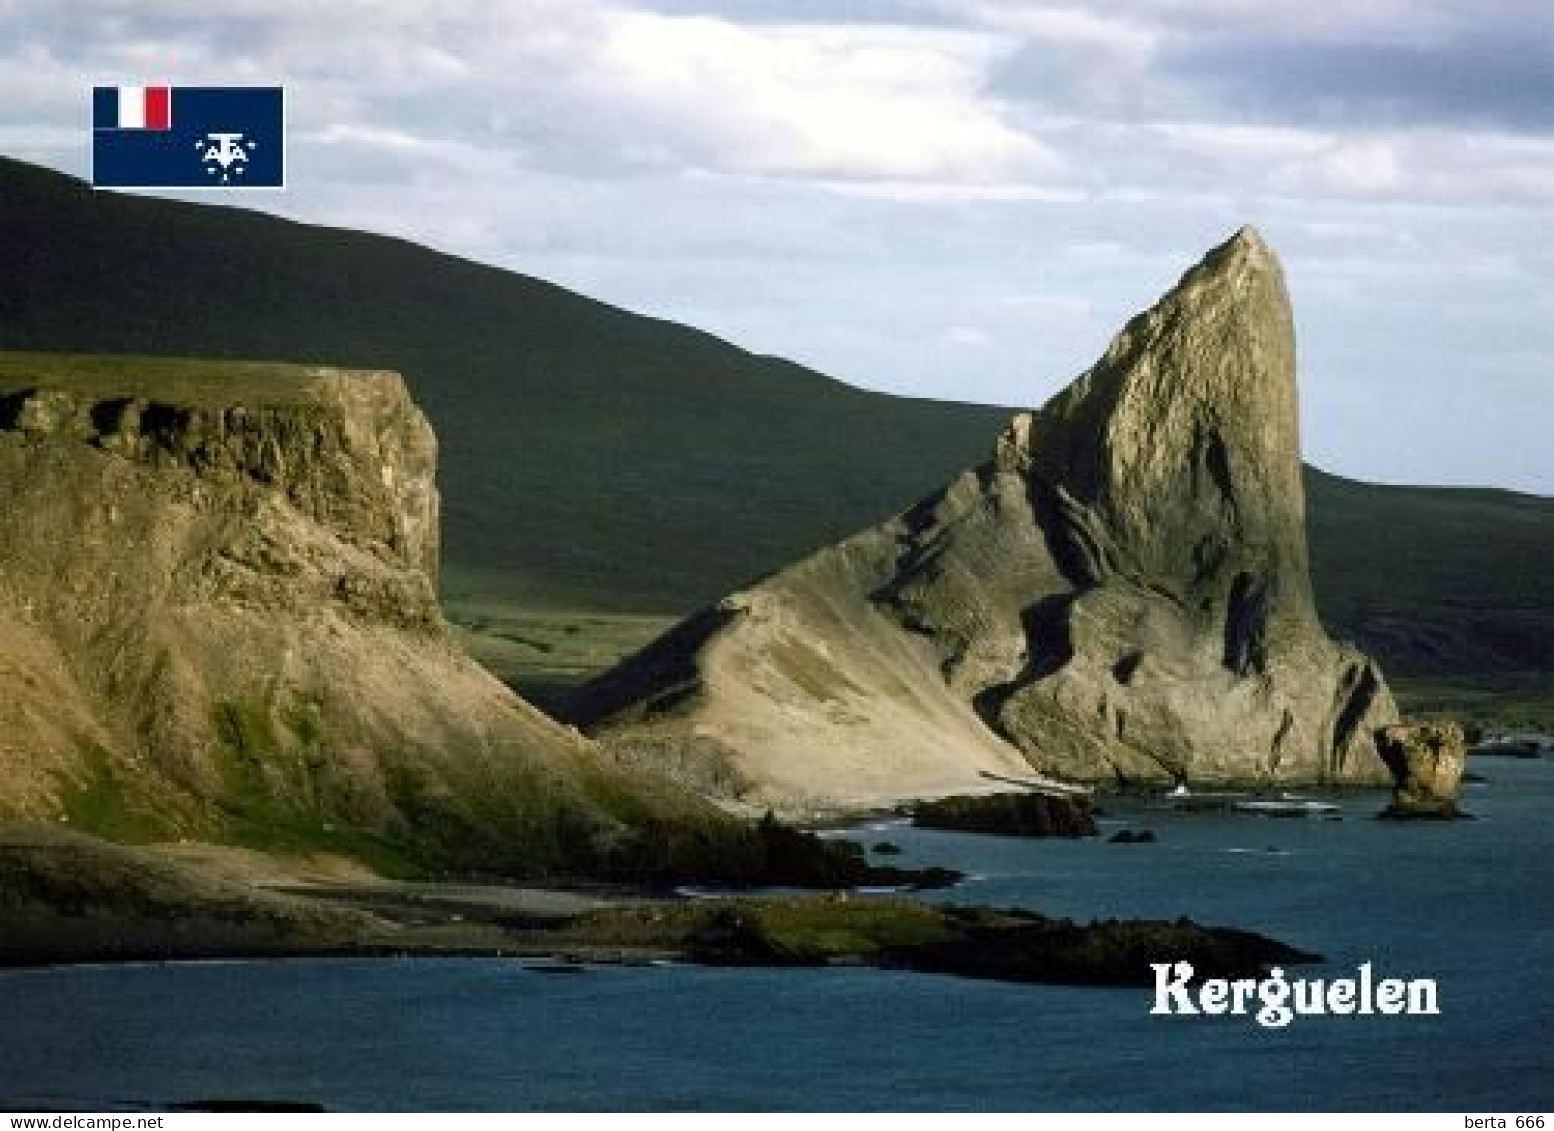 TAAF Kerguelen Islands UNESCO Desolation Islands Landscape New Postcard - TAAF : Terres Australes Antarctiques Françaises